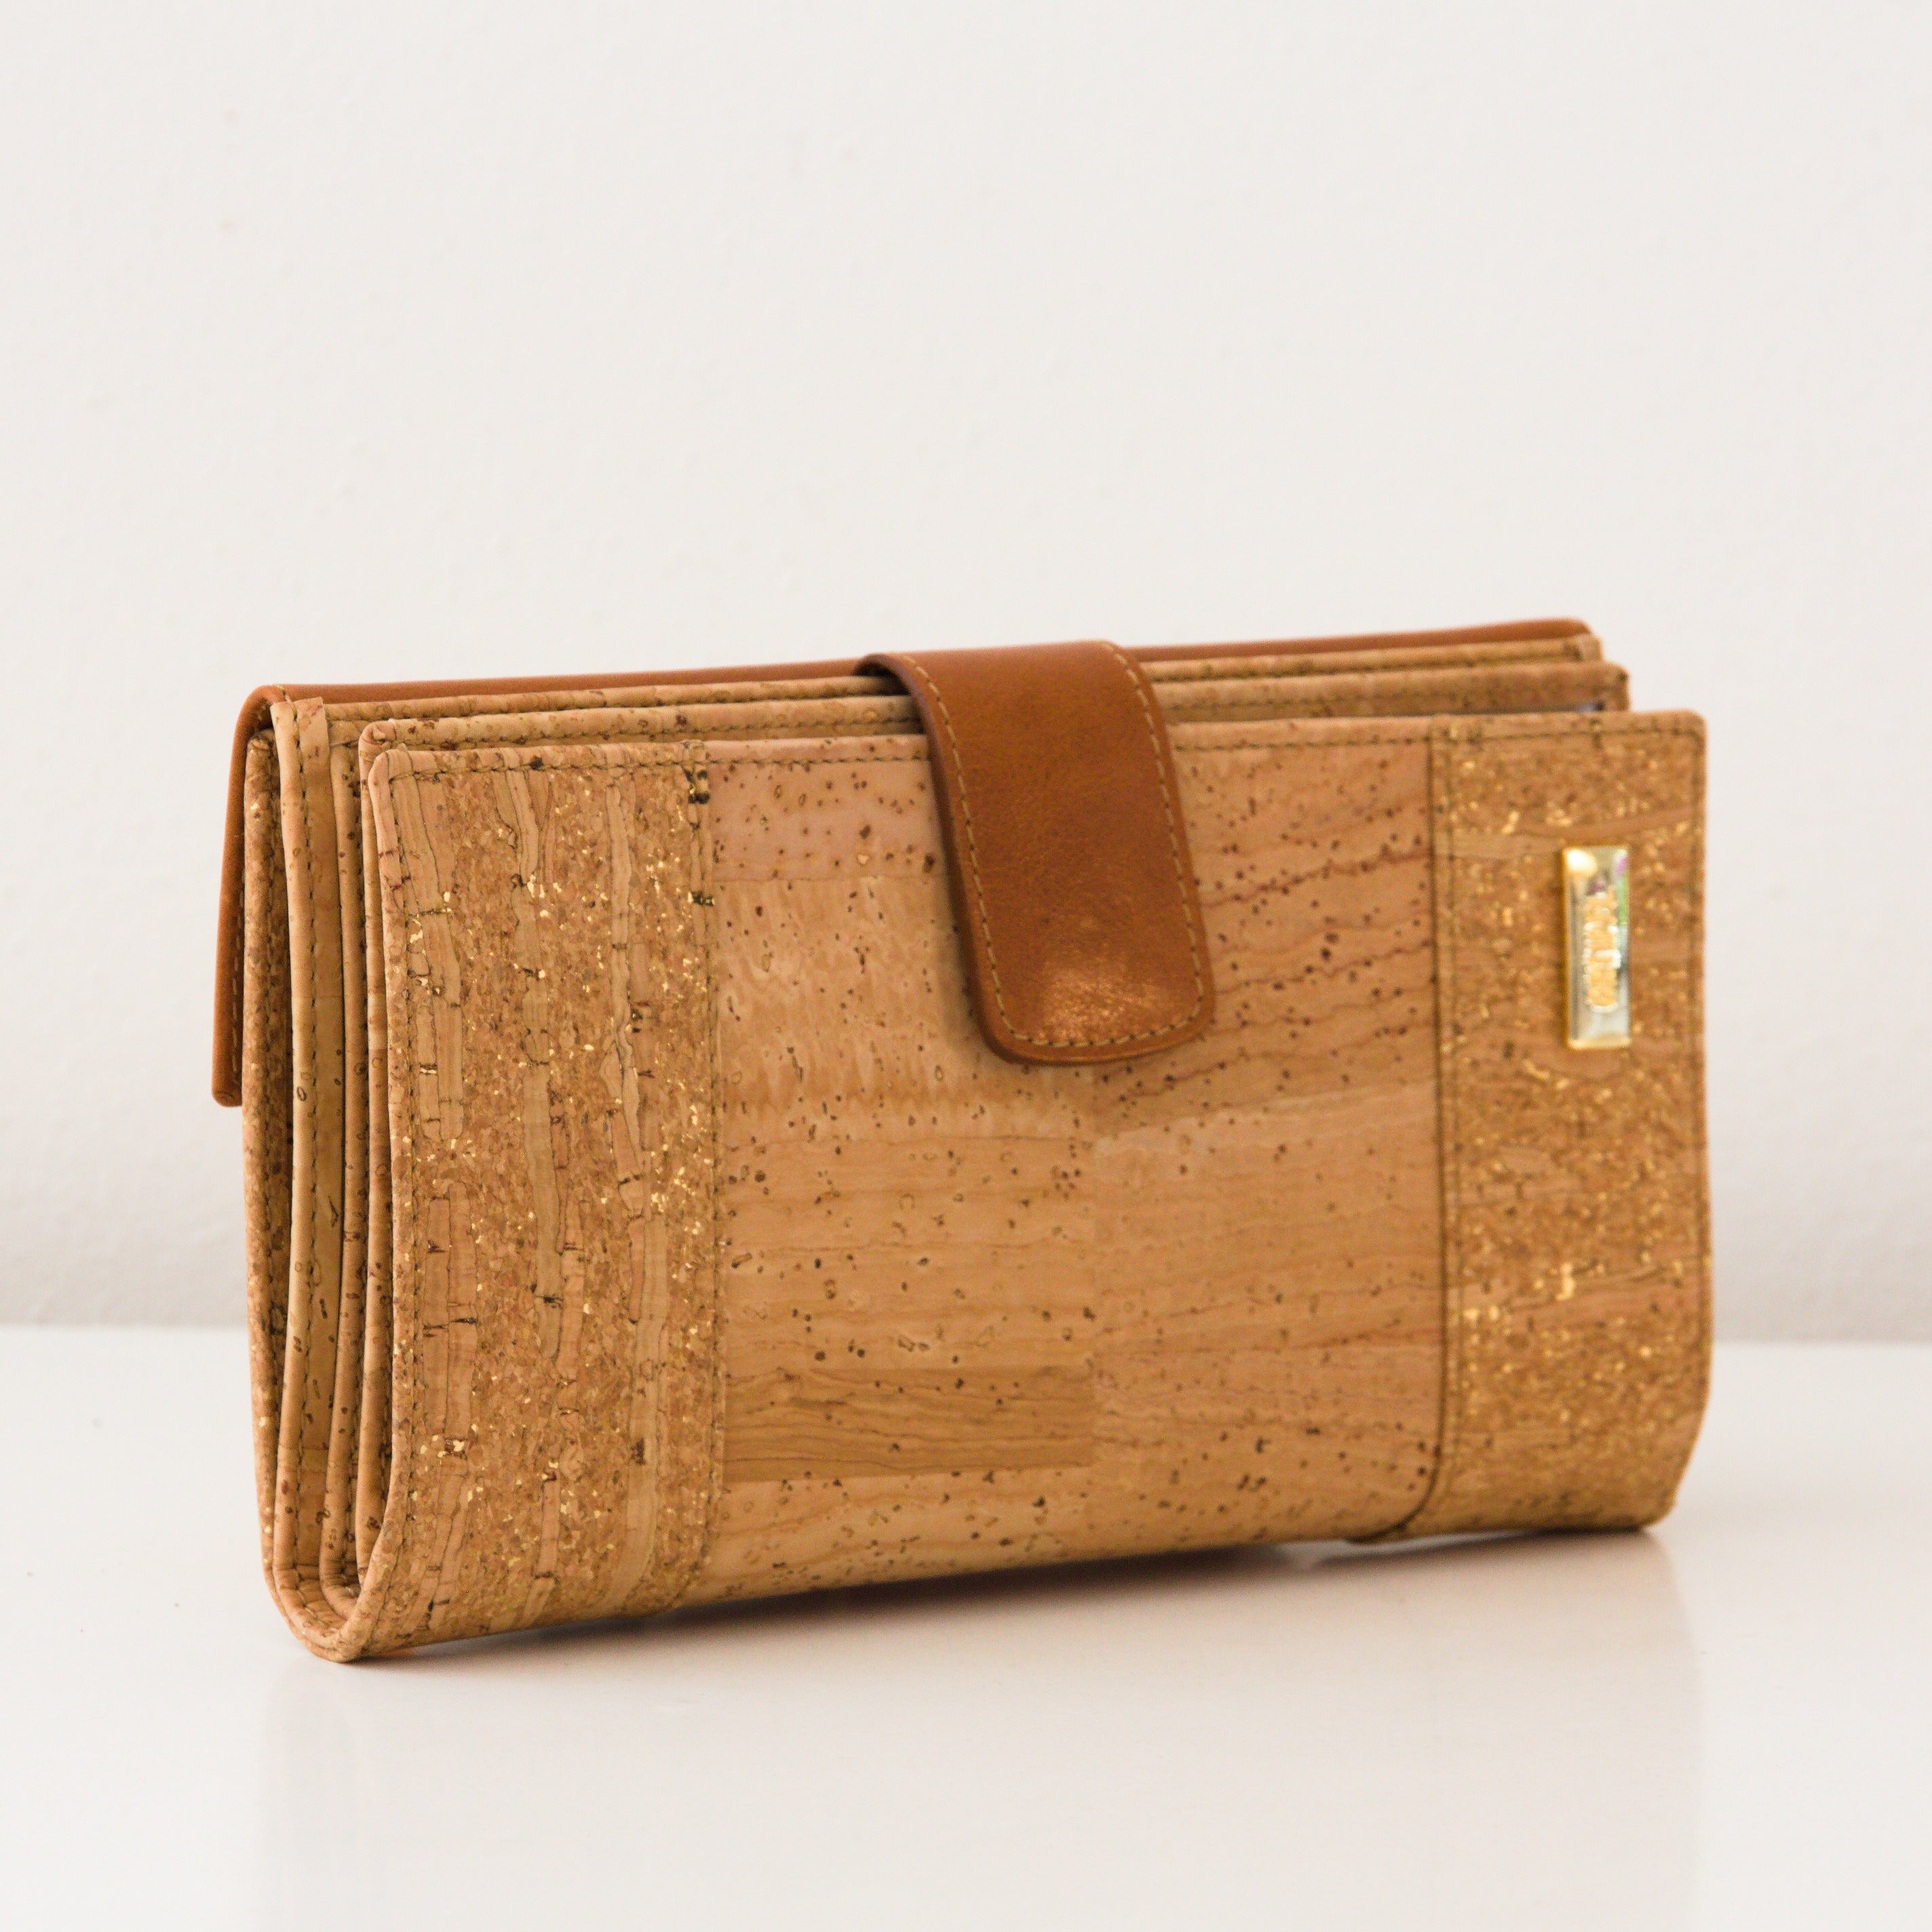 Cork women's wallet * women's wallet * handmade in Portugal * brand Artipel